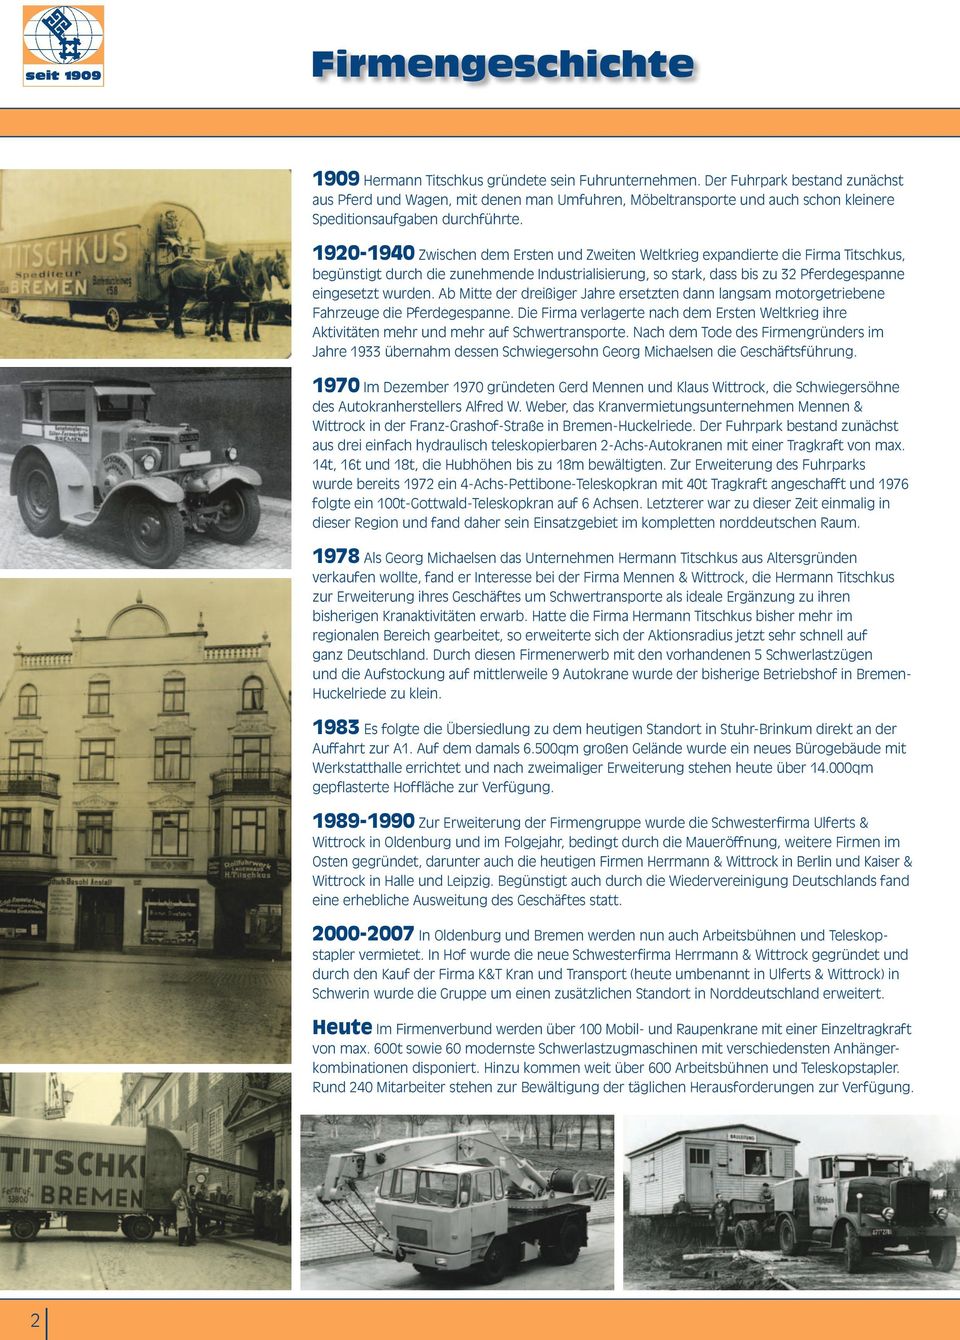 1920-1940 Zwischen dem Ersten und Zweiten Weltkrieg expandierte die Firma Titschkus, begünstigt durch die zunehmende Industrialisierung, so stark, dass bis zu 32 Pferdegespanne eingesetzt wurden.